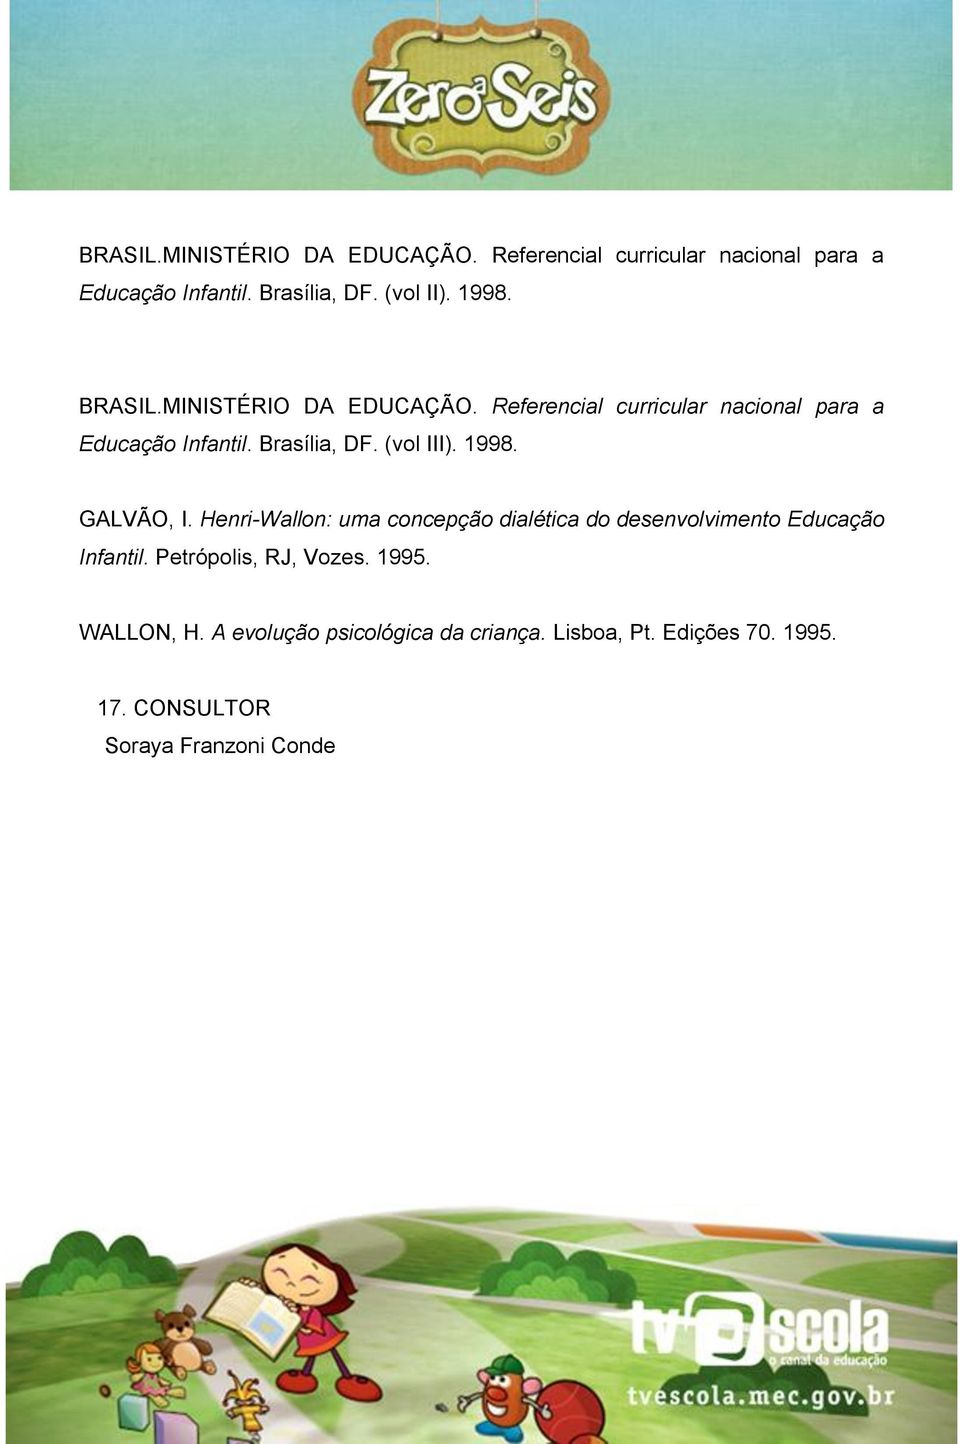 (vol III). 1998. GALVÃO, I. Henri-Wallon: uma concepção dialética do desenvolvimento Educação Infantil.